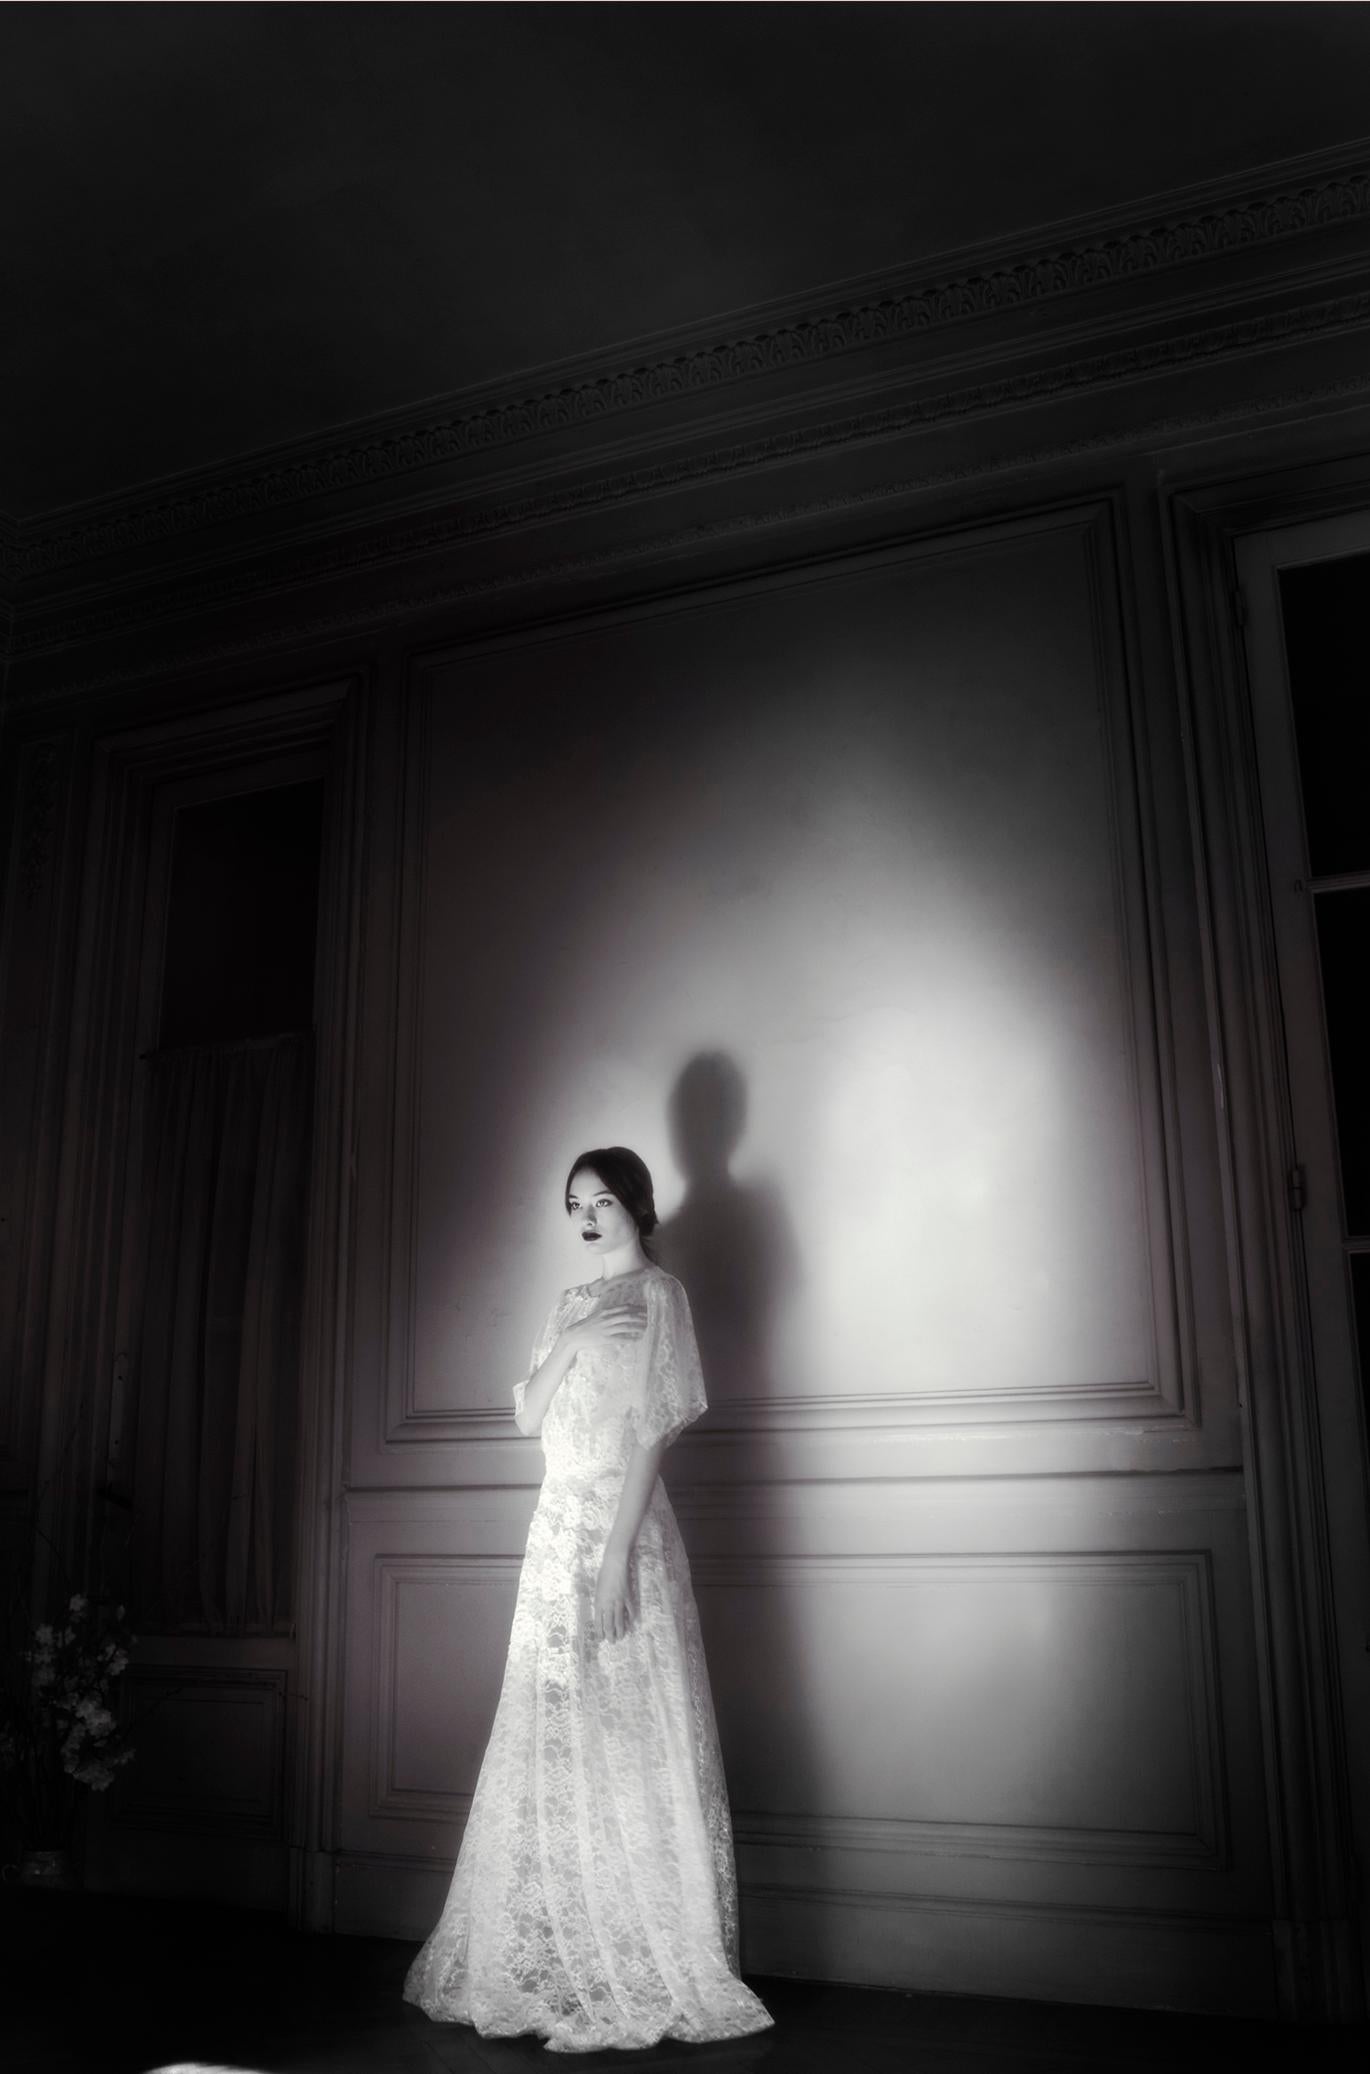 Lèa Bon Black and White Photograph - Honeymoon, Portrait. Limited edition fashion color photograph. 